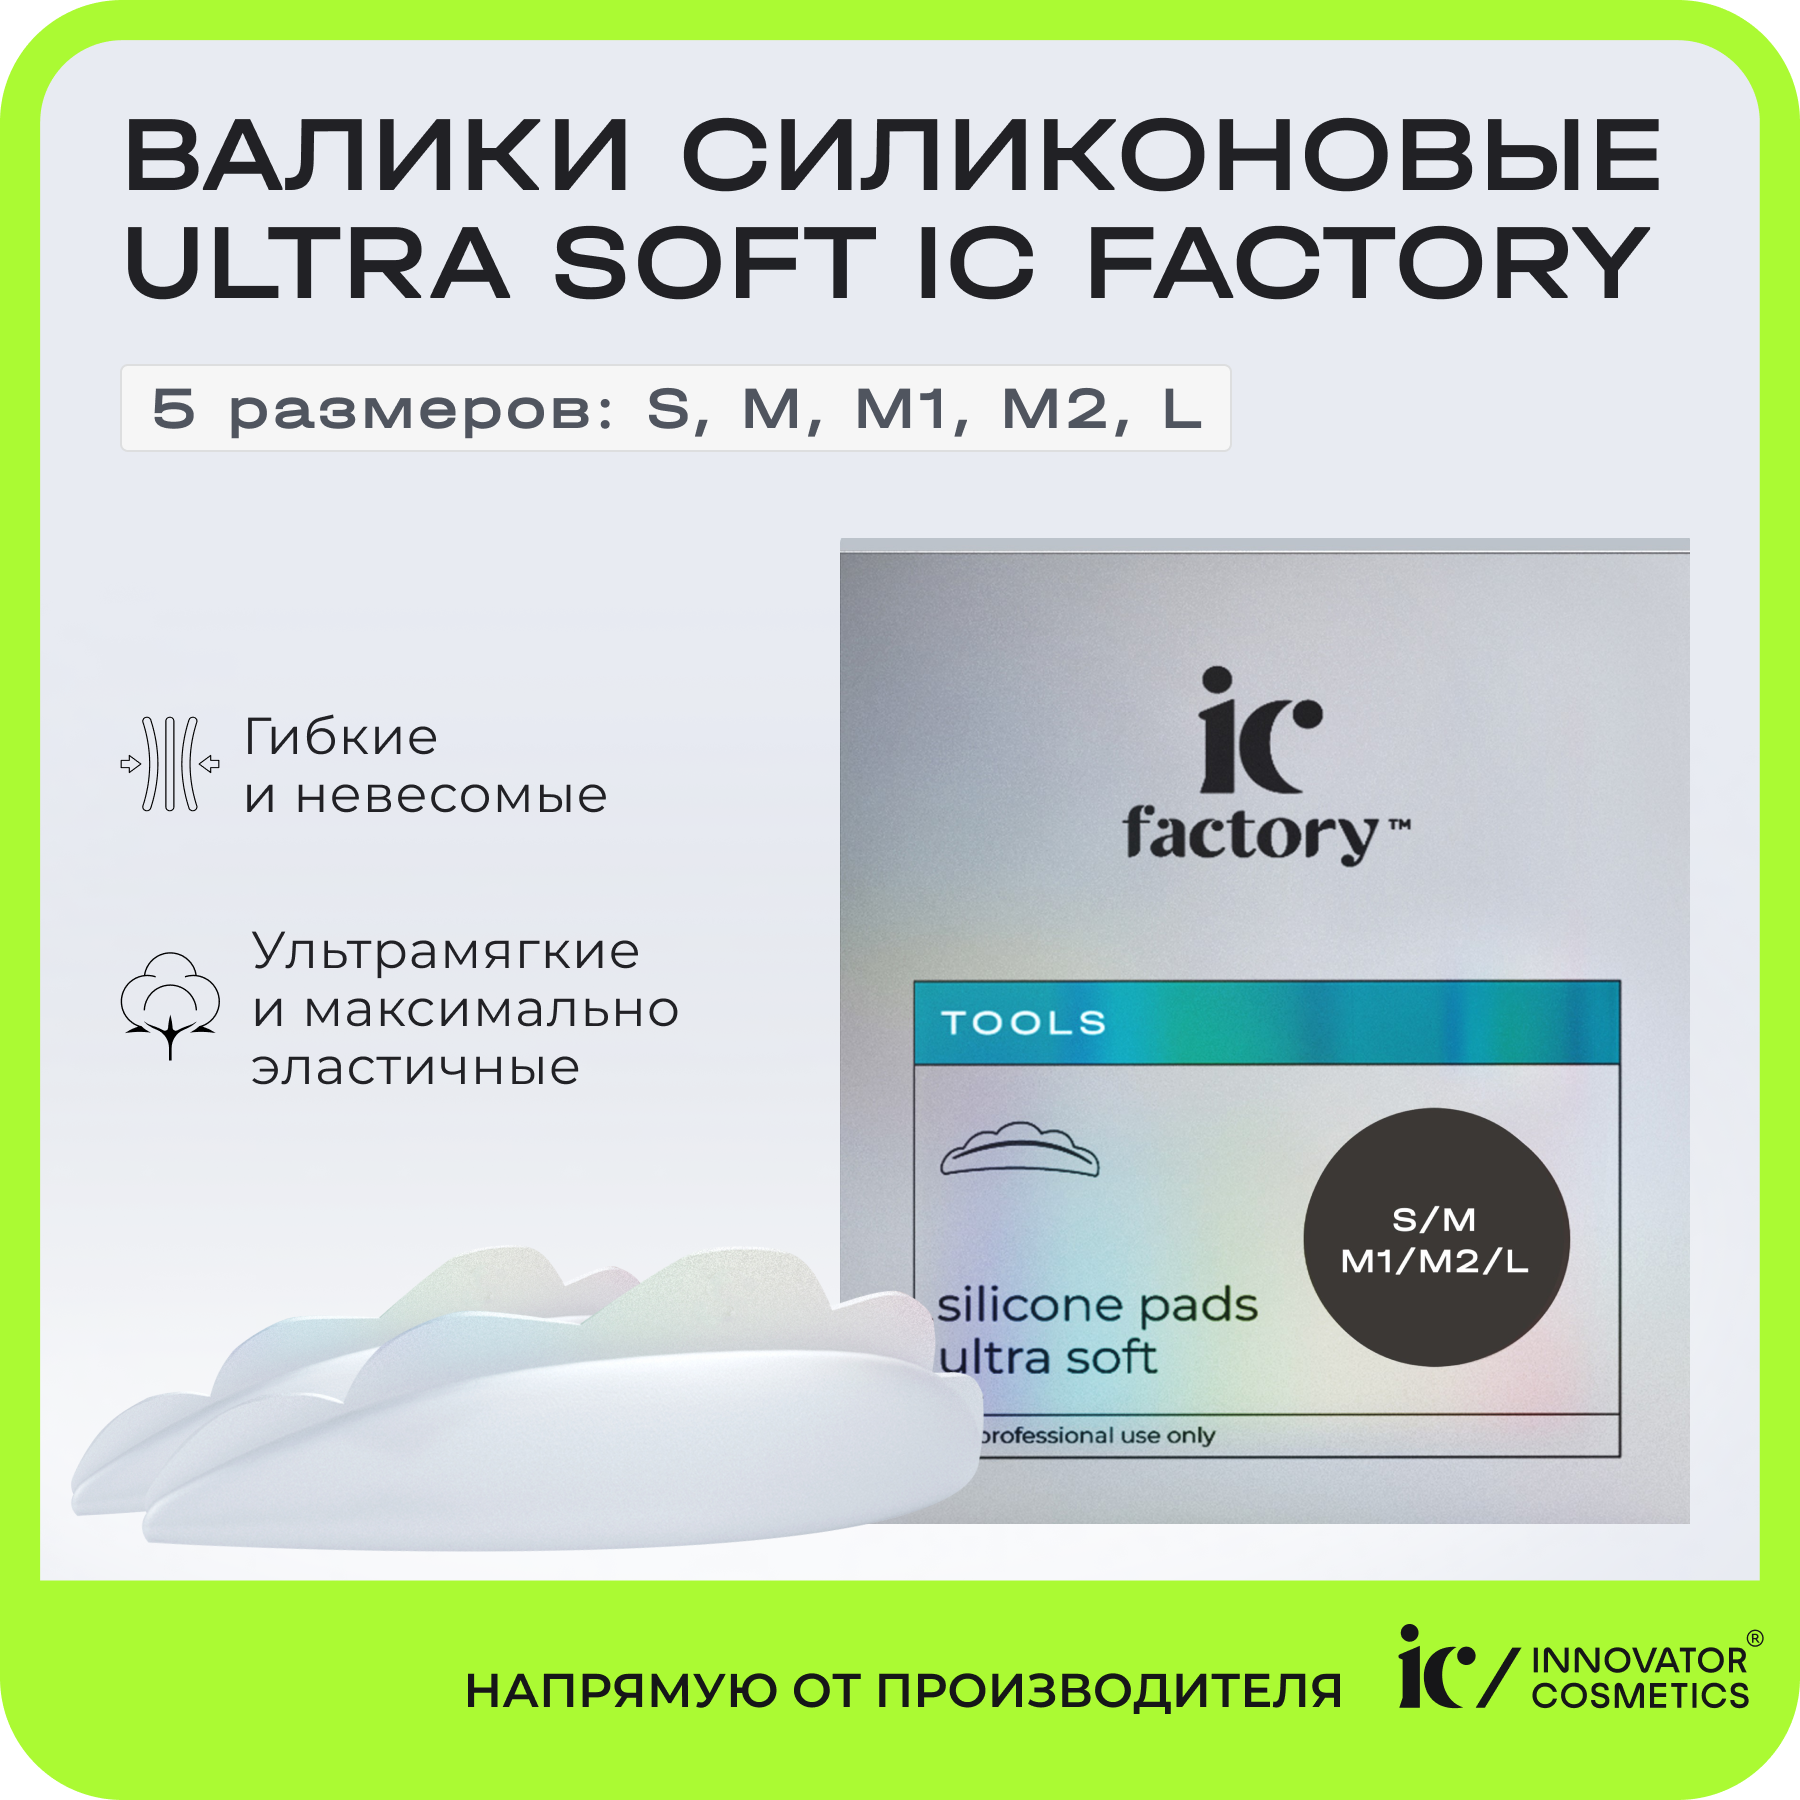 Набор валиков силиконовых Innovator Cosmetics Ultra Soft IC FACTORY, 5 размеров